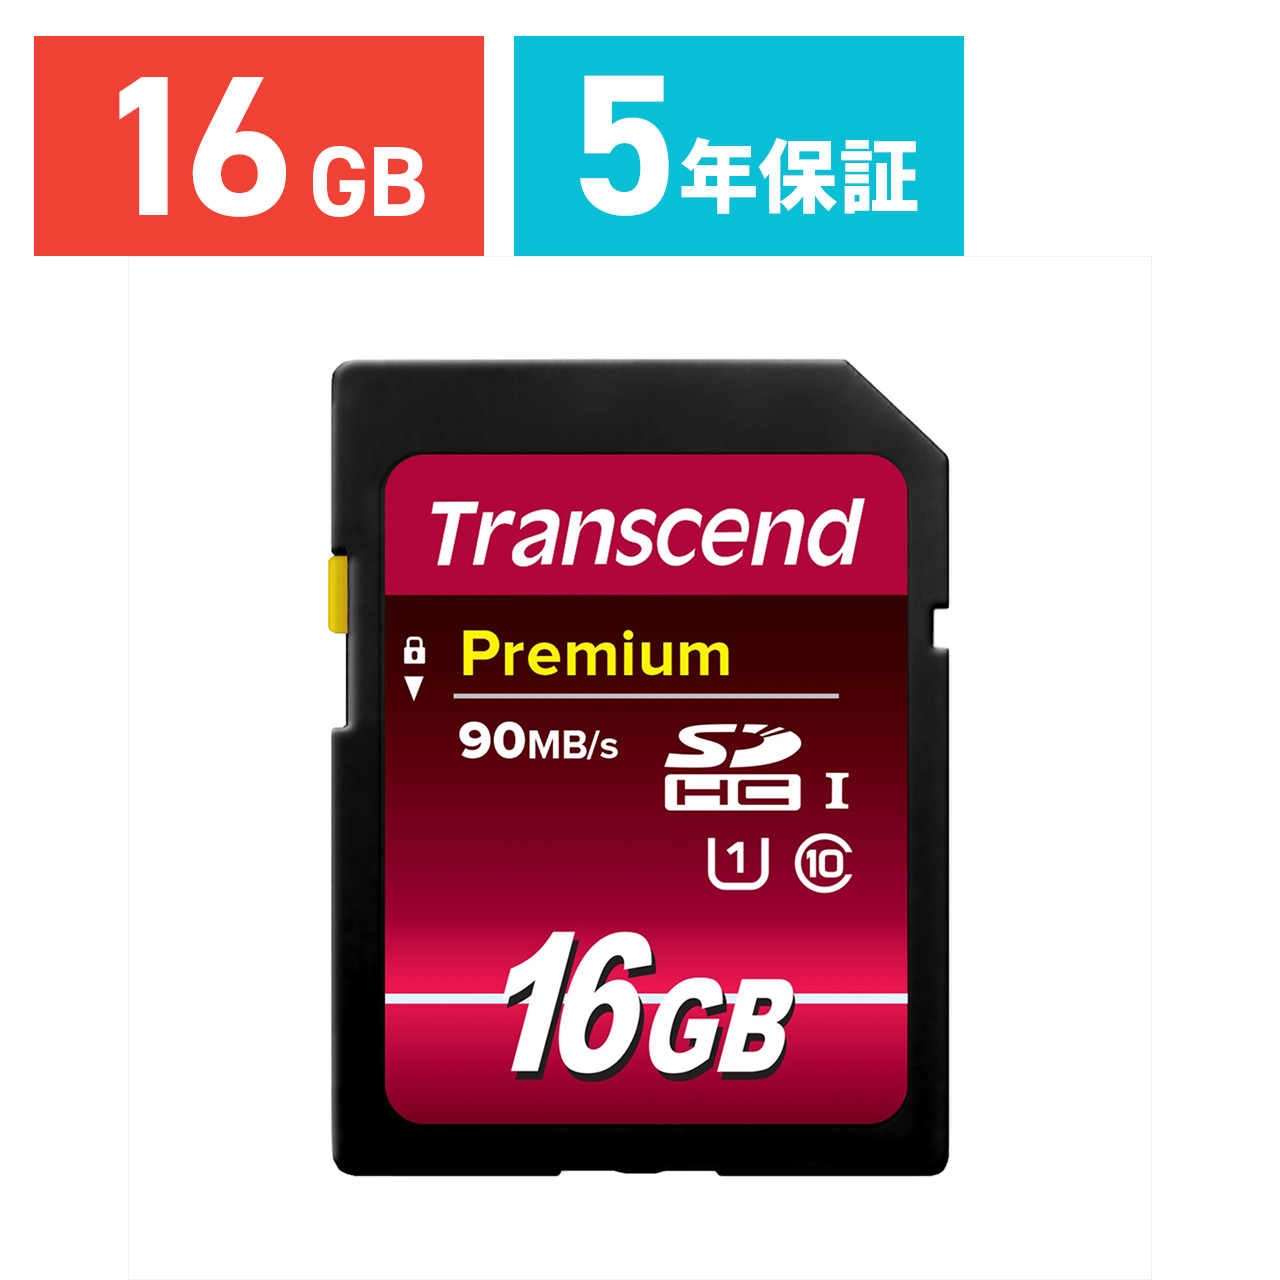 SDHCカード 16GB class10 UHS-I対応 Premium Transcend社製